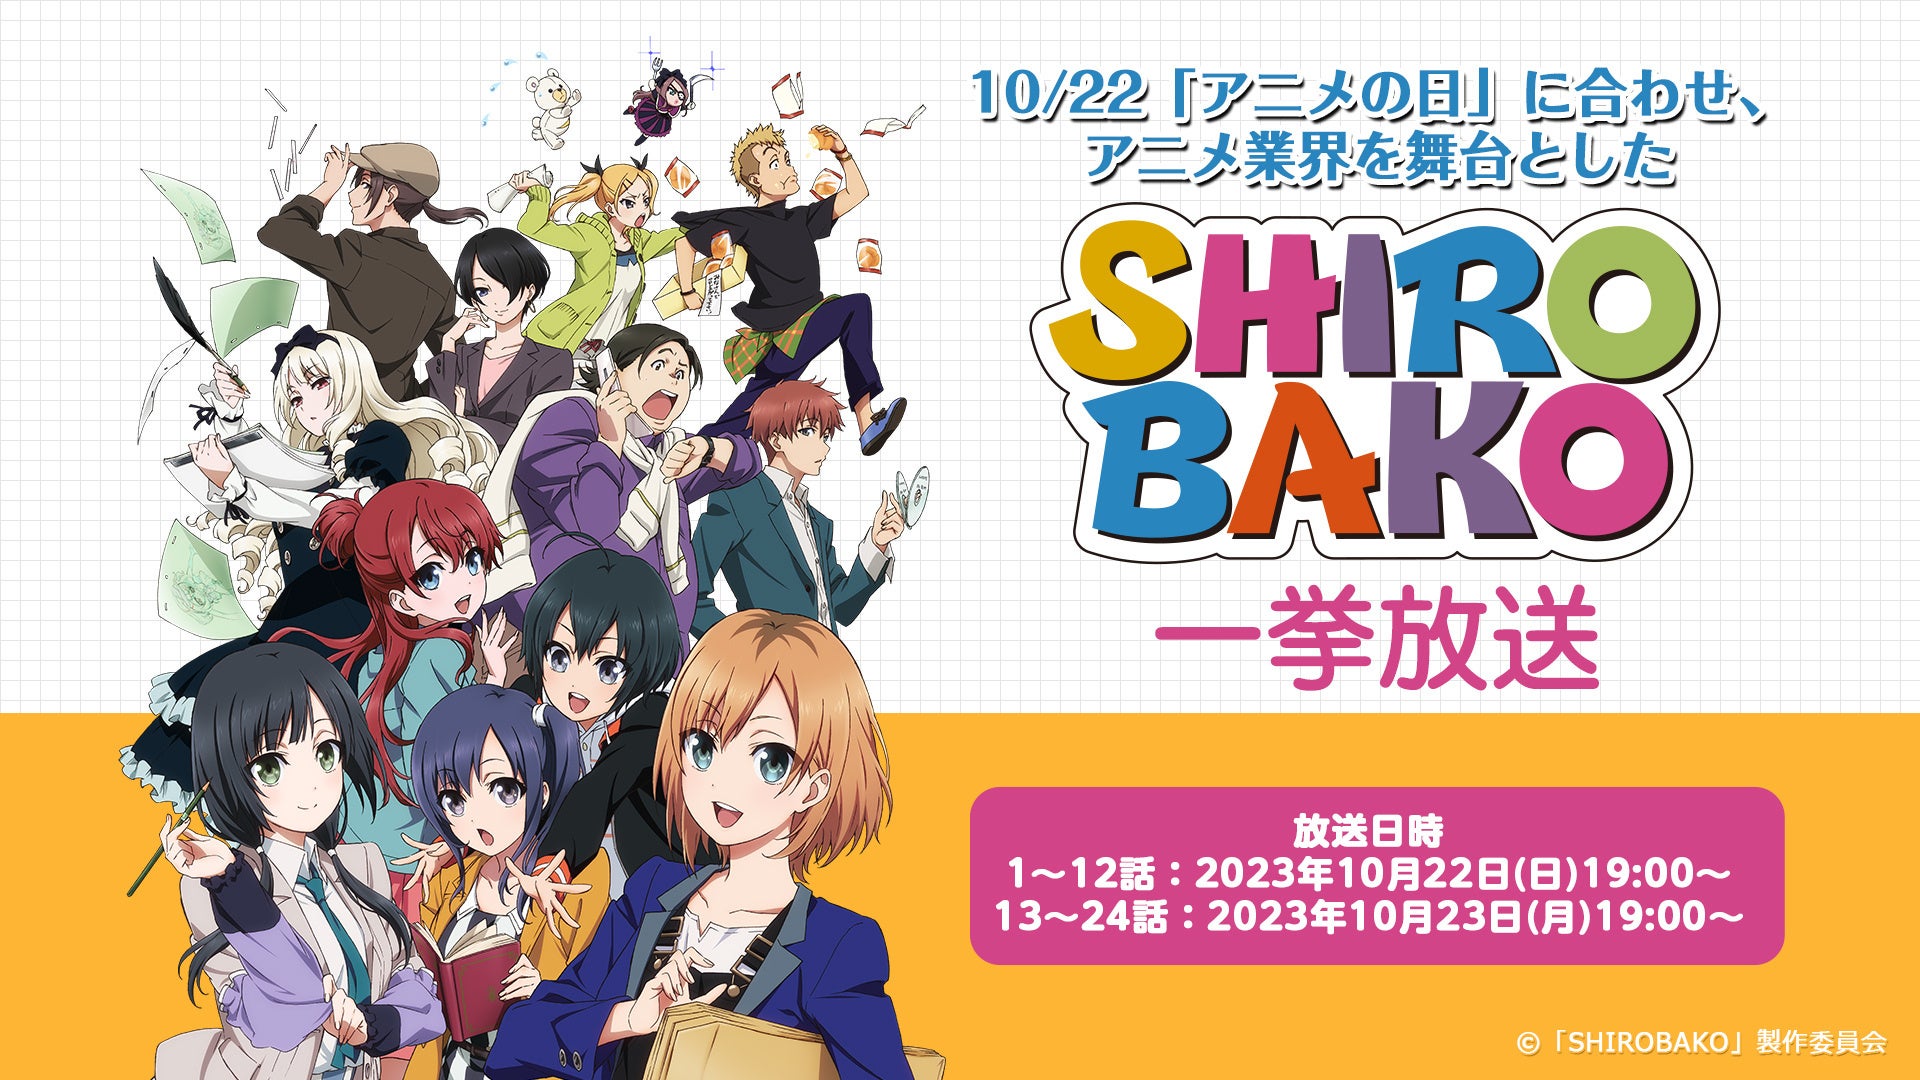 アニメのリアルな制作現場を描いた人気作『SHIROBAKO』 10/22の“アニメの日”にちなみ 2夜連続で全24話をニコ生で無料一挙放送